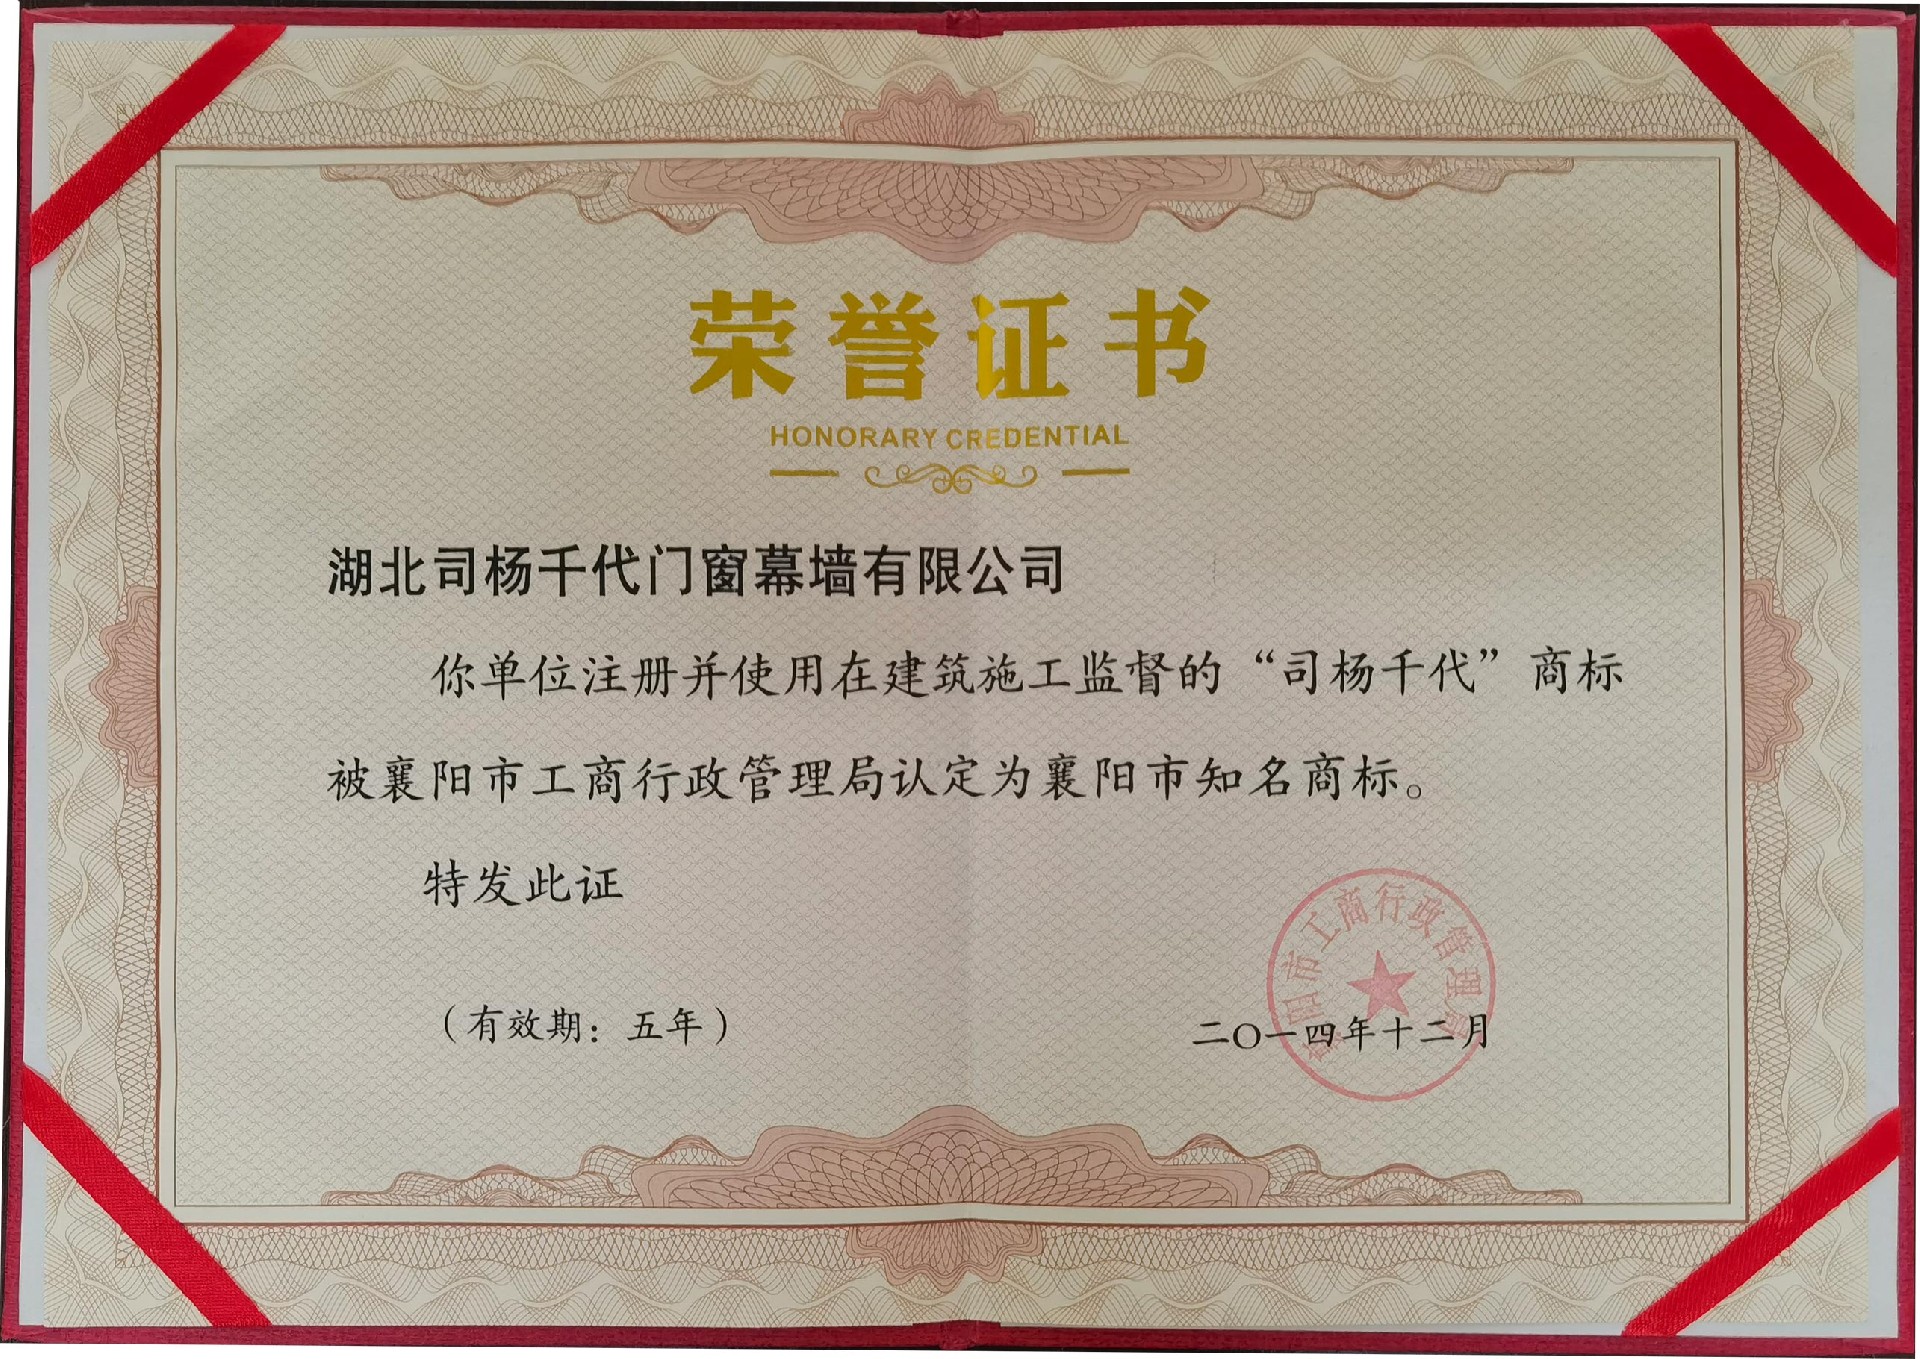 2014年12月使用在建筑施工监督的司杨千代商标认定为襄阳知名商标。